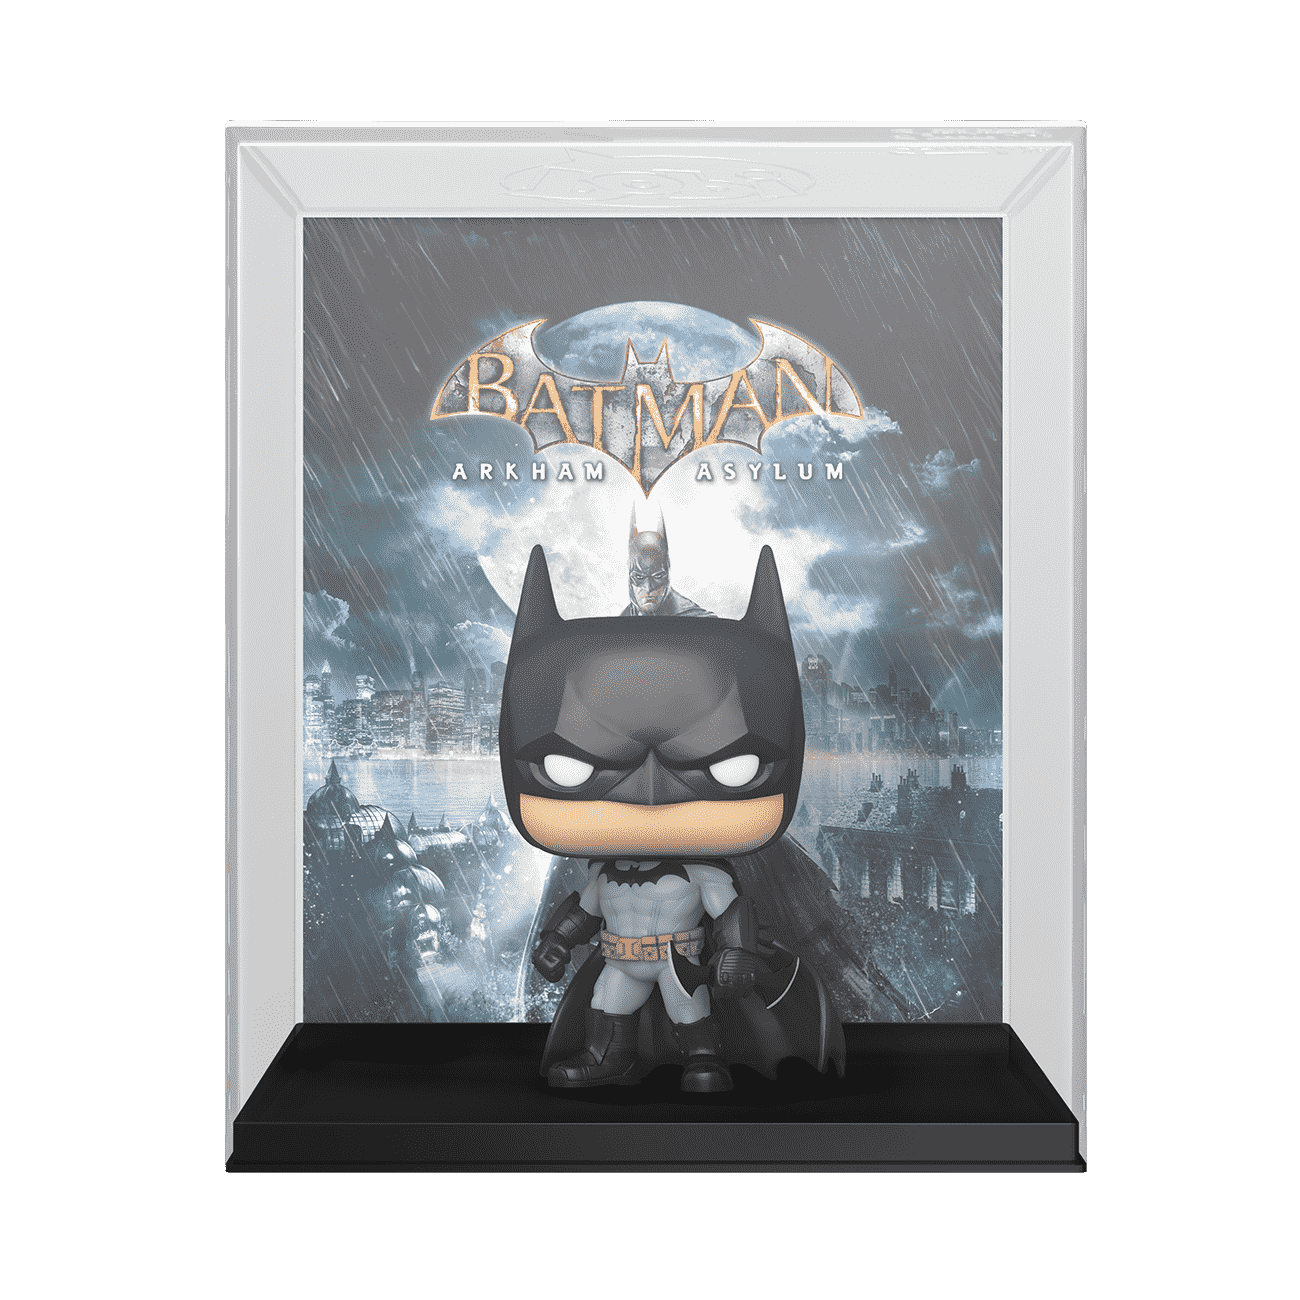 Batman: Arkham Games and Comics in Order